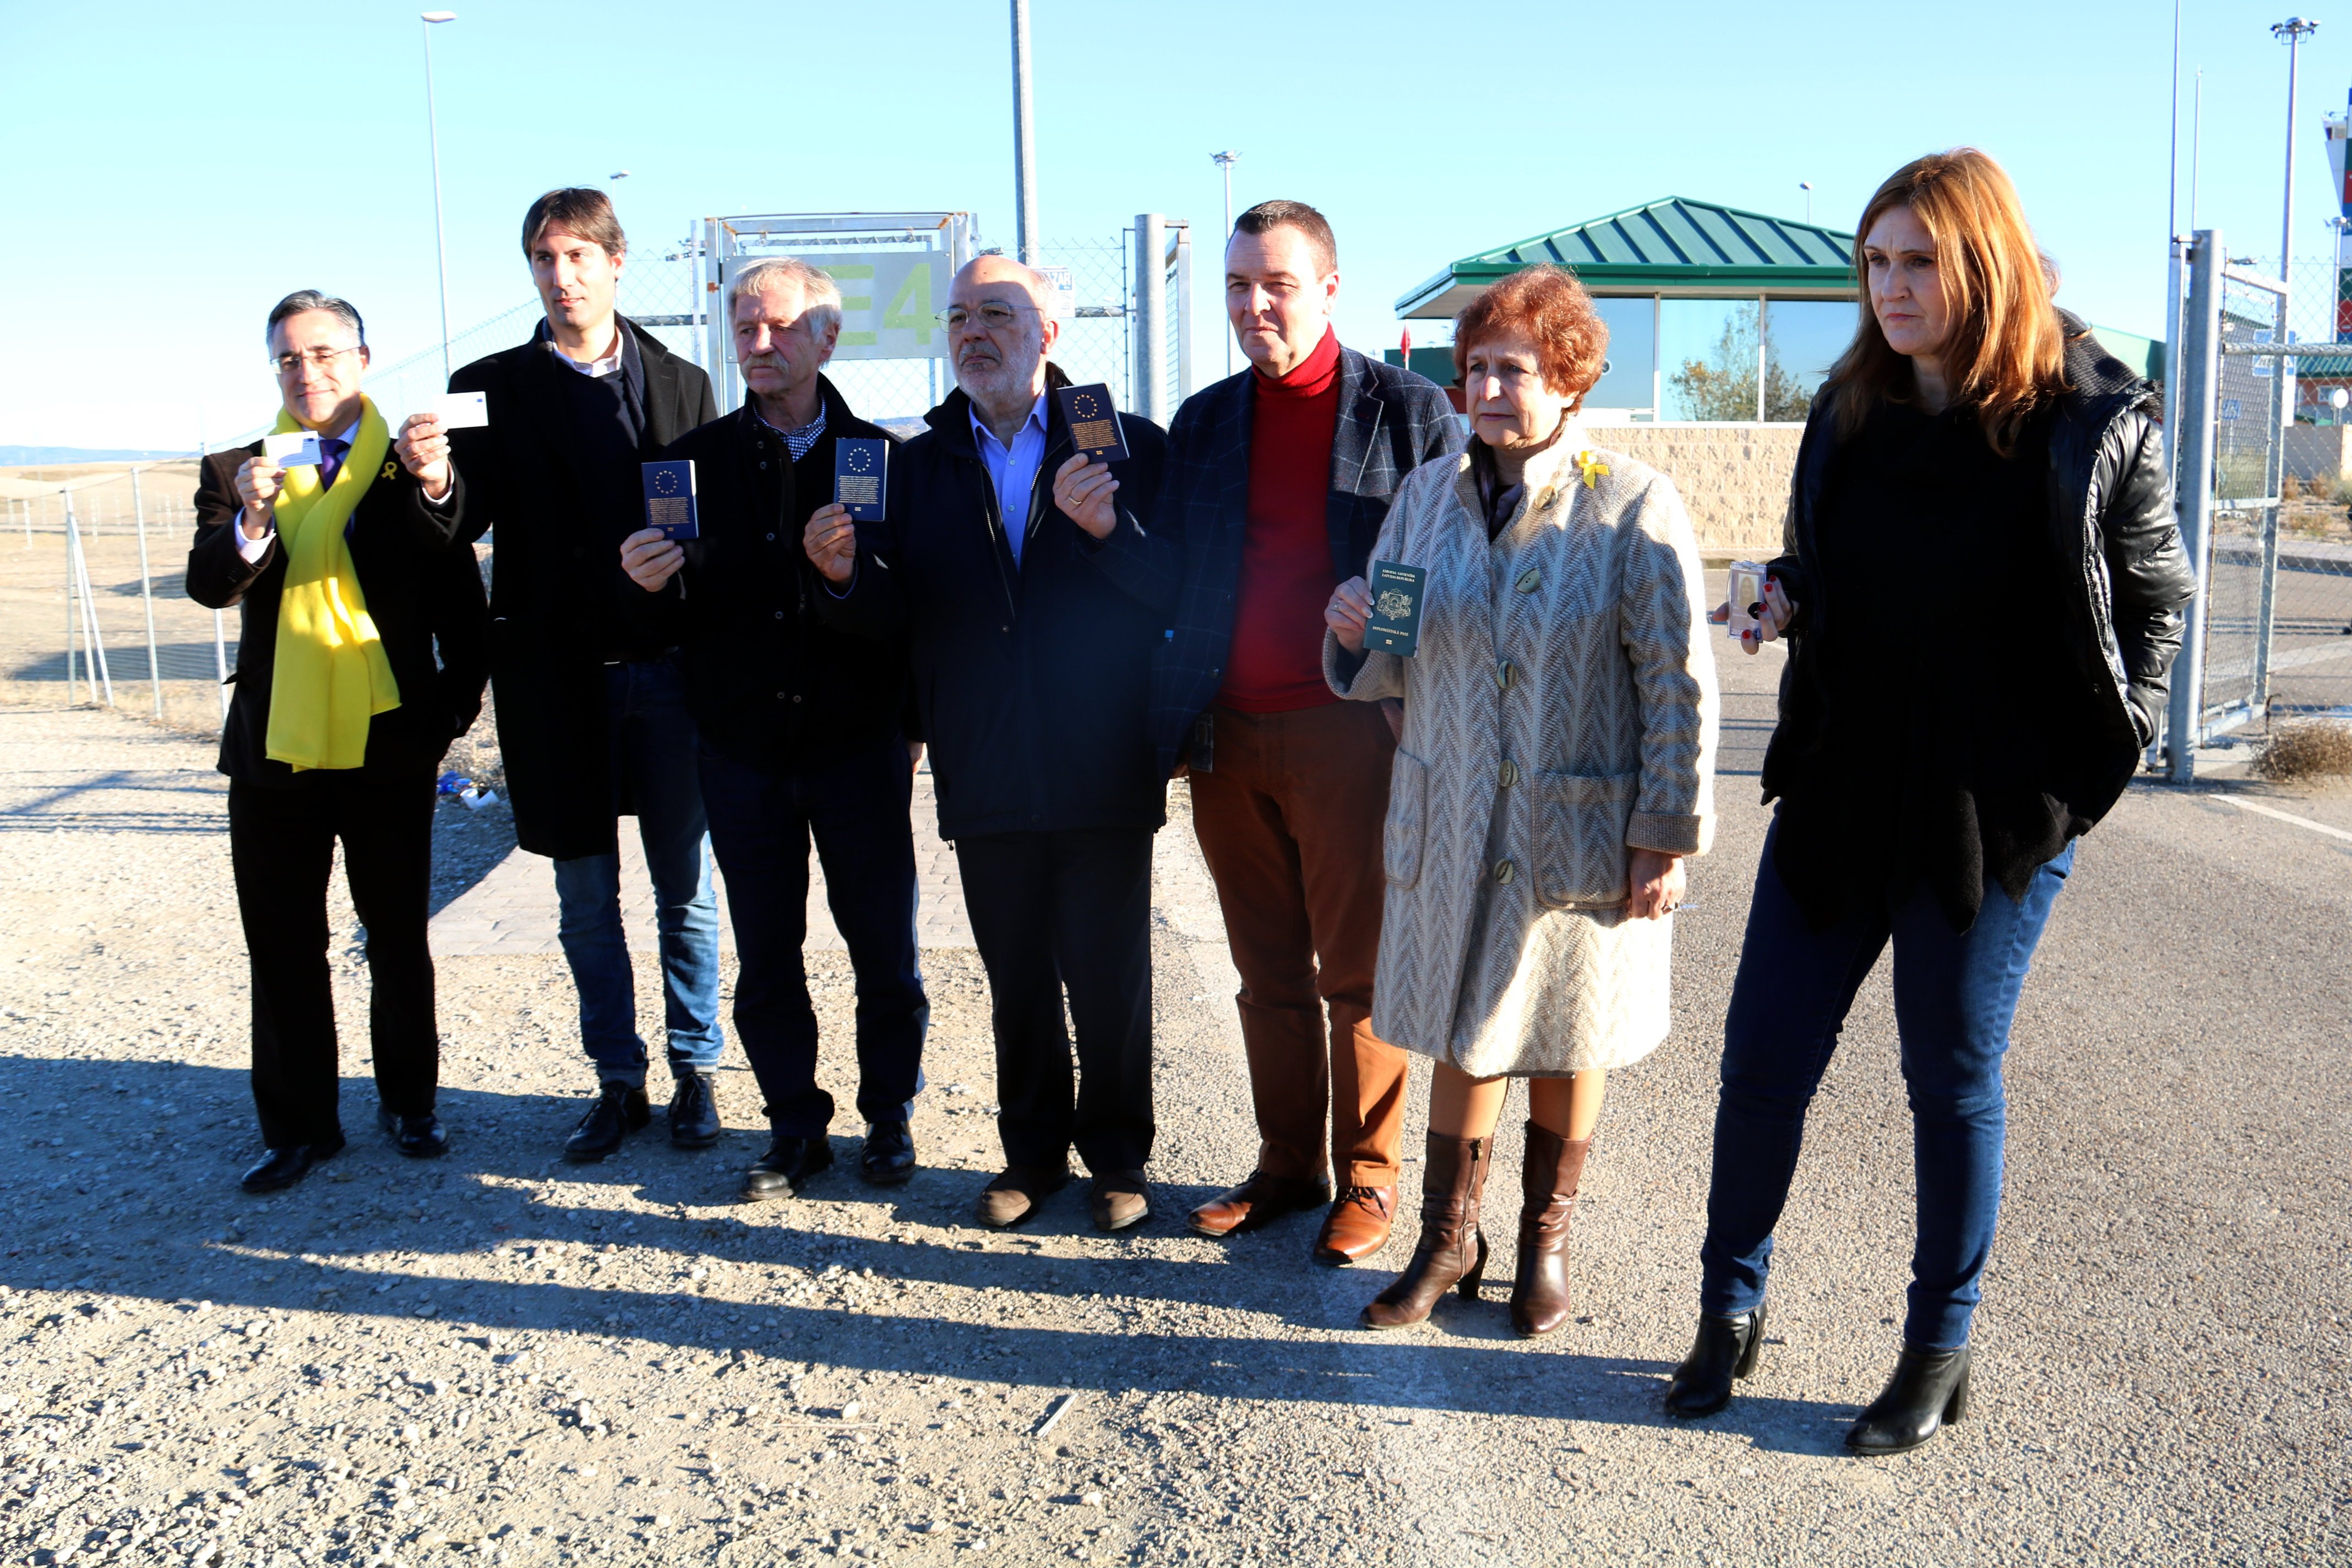 Tretze eurodiputats visitaran divendres tots els presos polítics